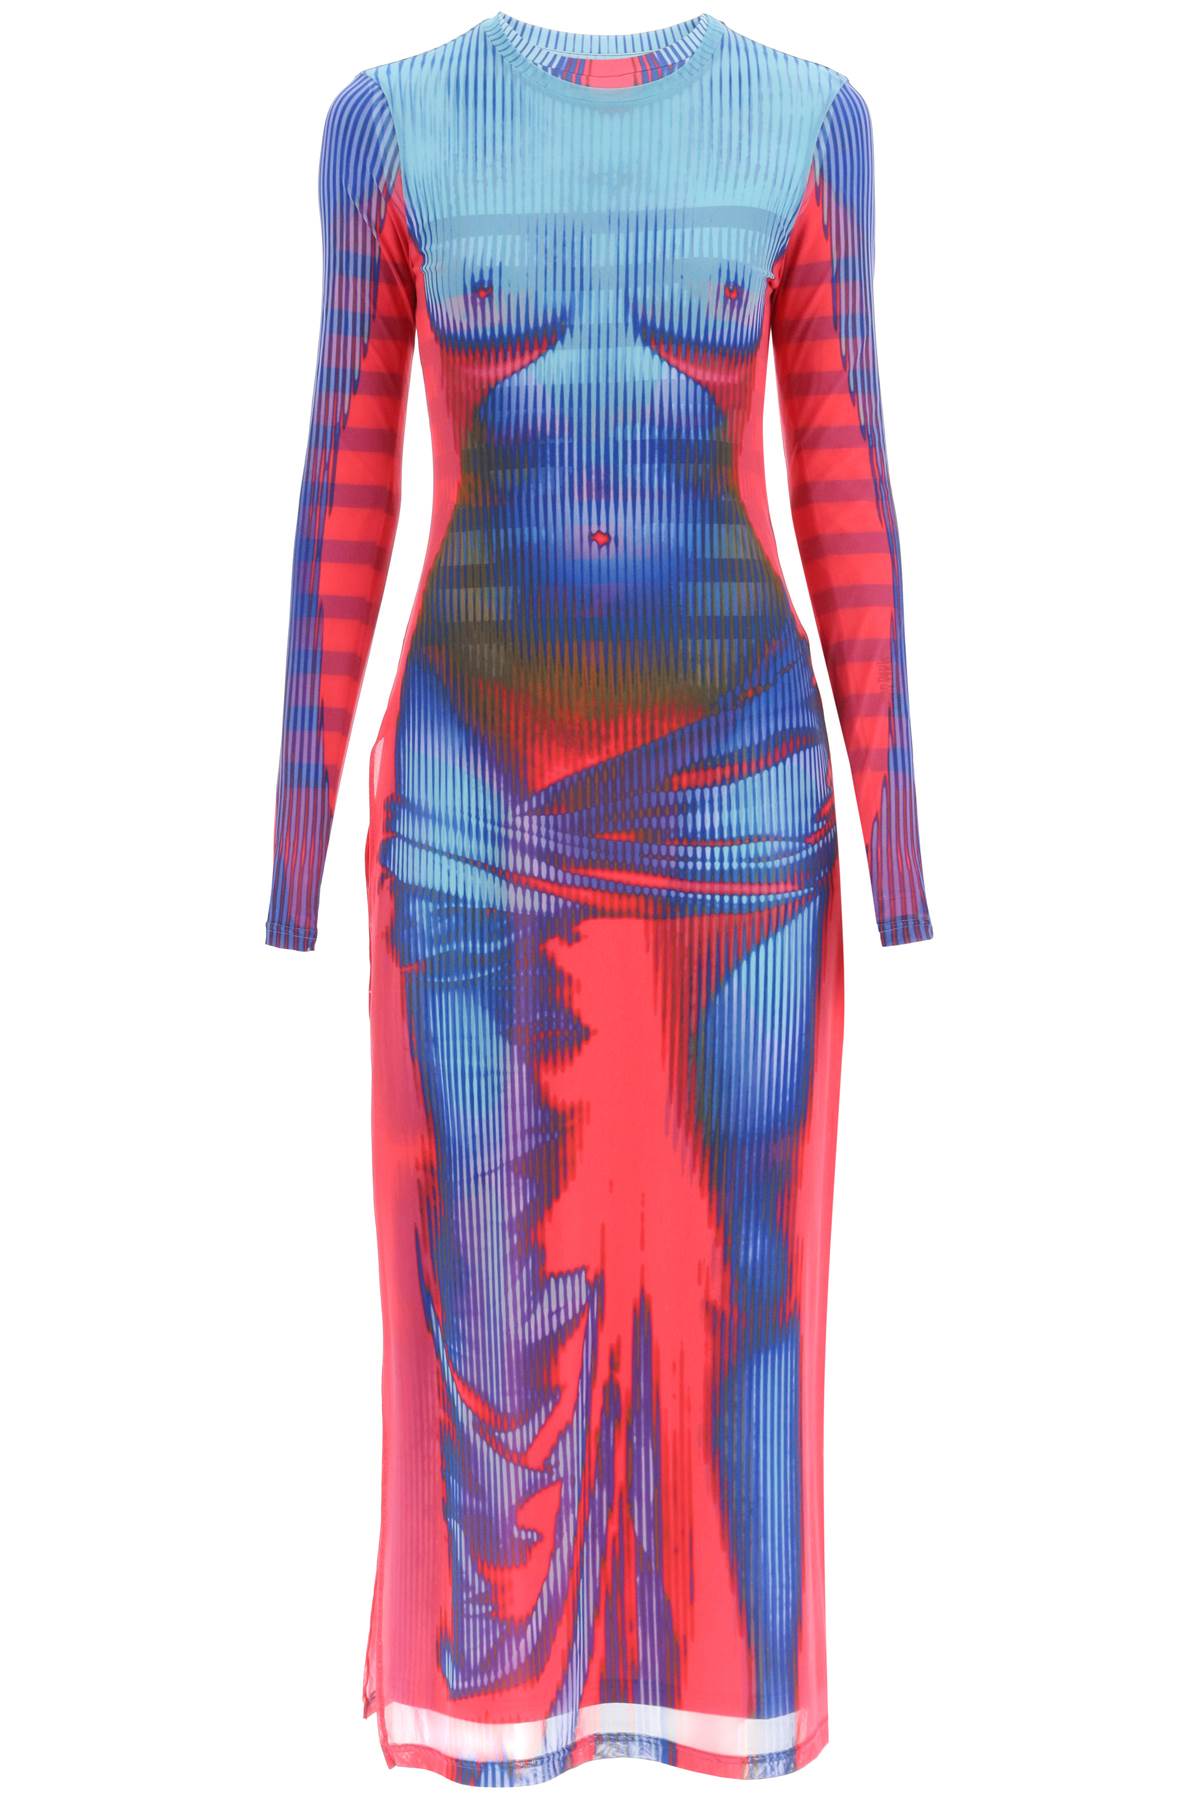 Y Project Jean Paul Gaultier Body Morph Dress Women